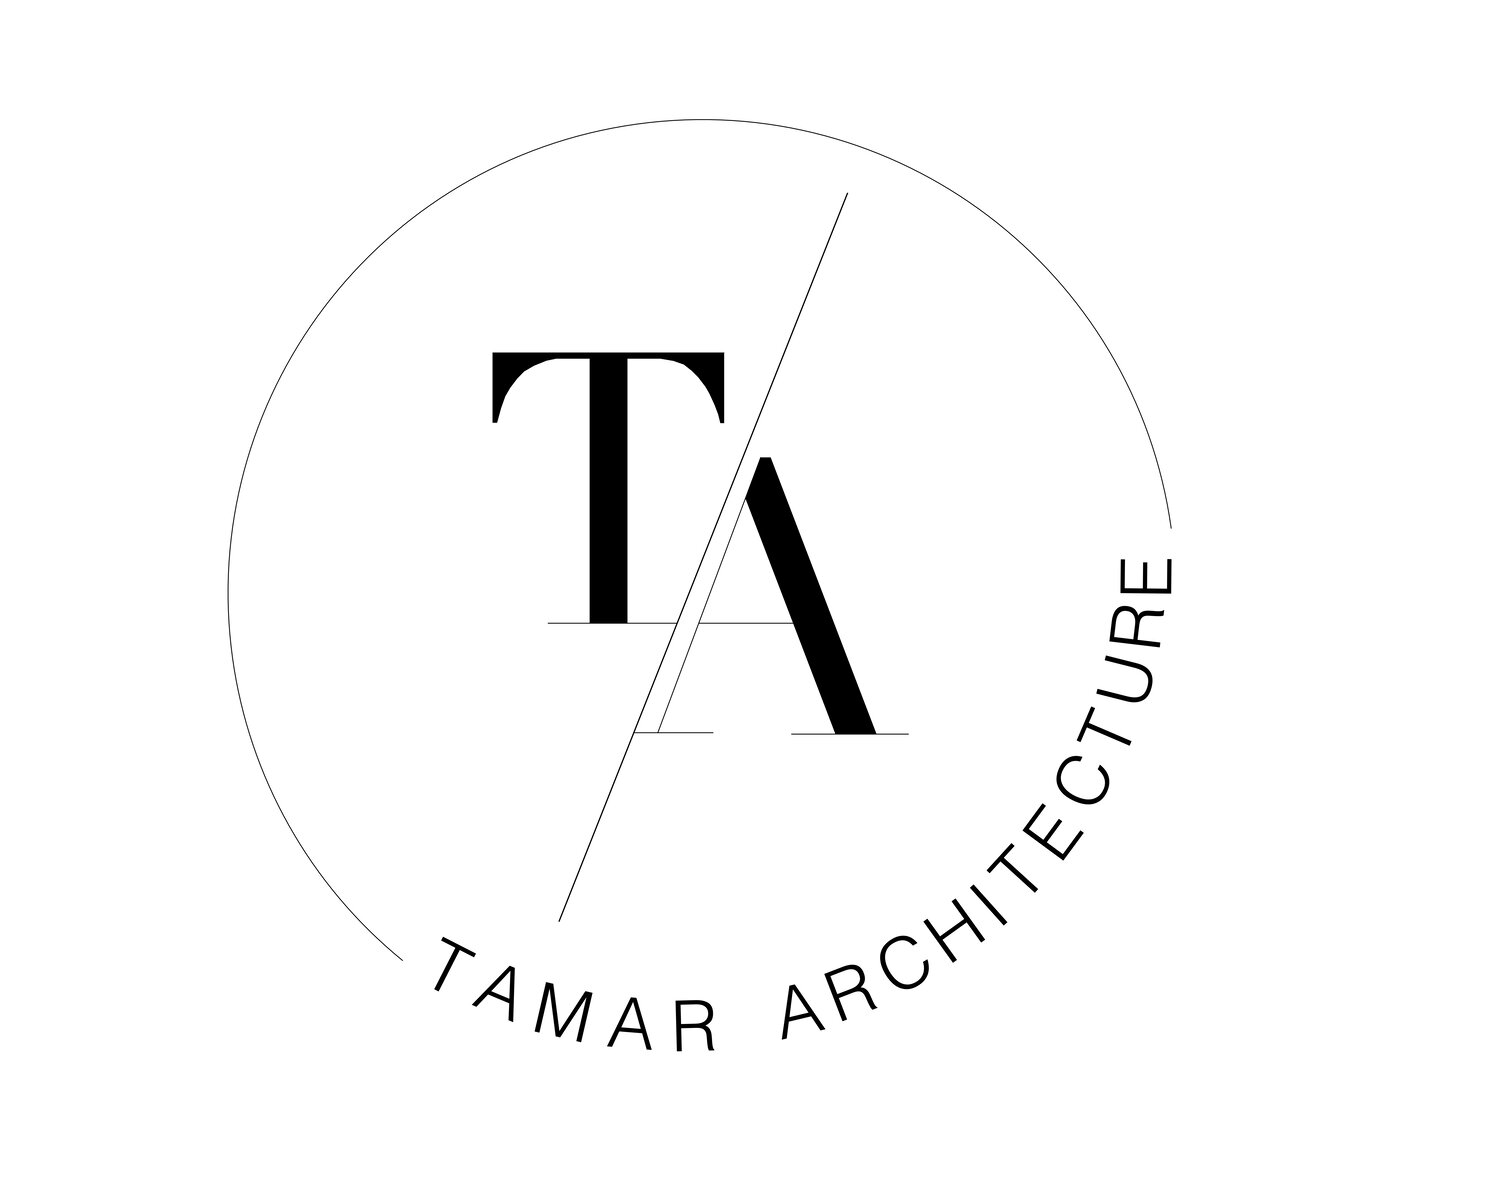 Tamar Architecture